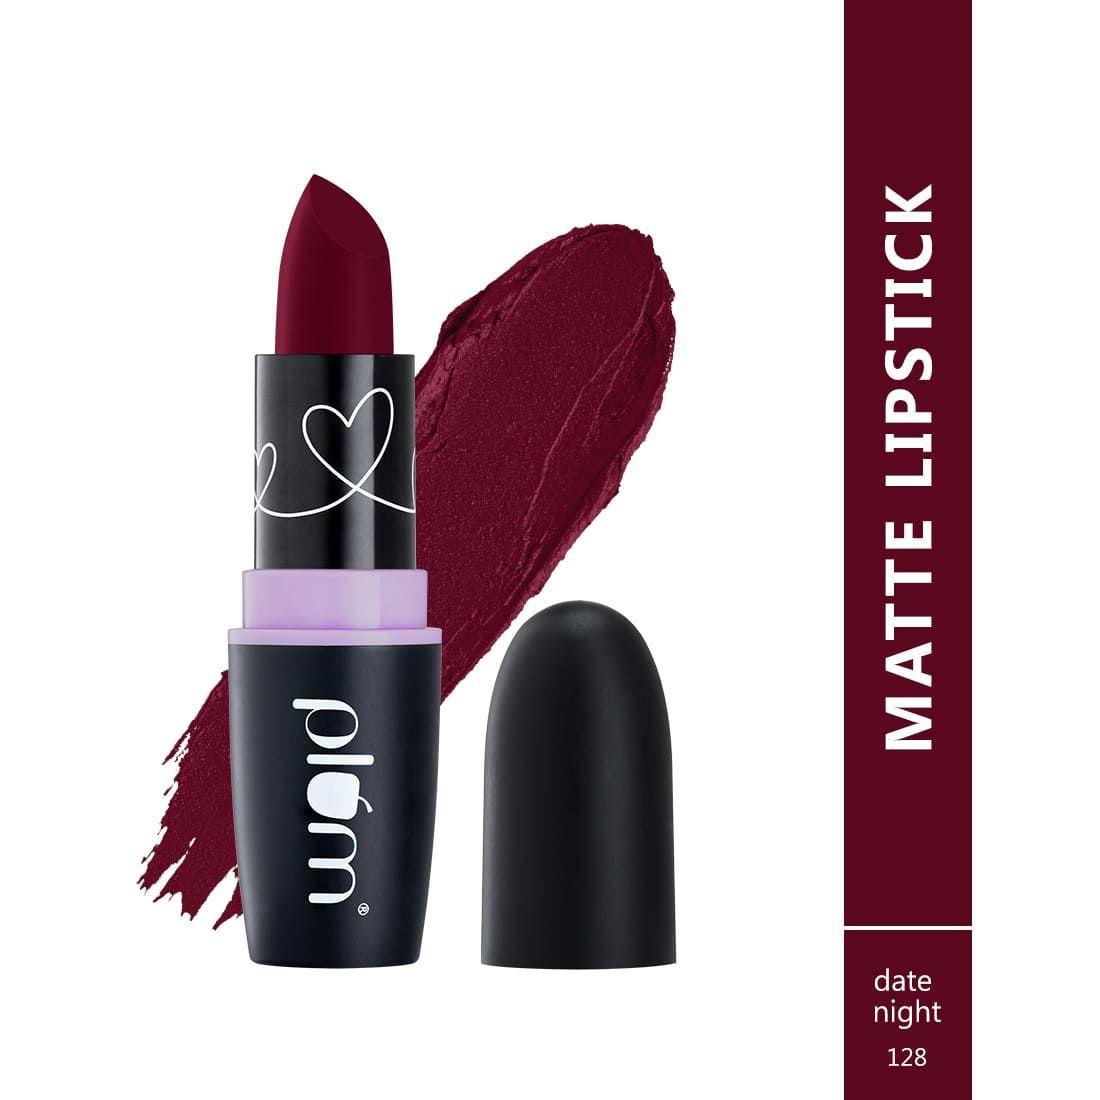 Plum Matterrific Lipstick | Highly Pigmented | Nourishing & Non-Drying |Date Night - 128 (Wine)